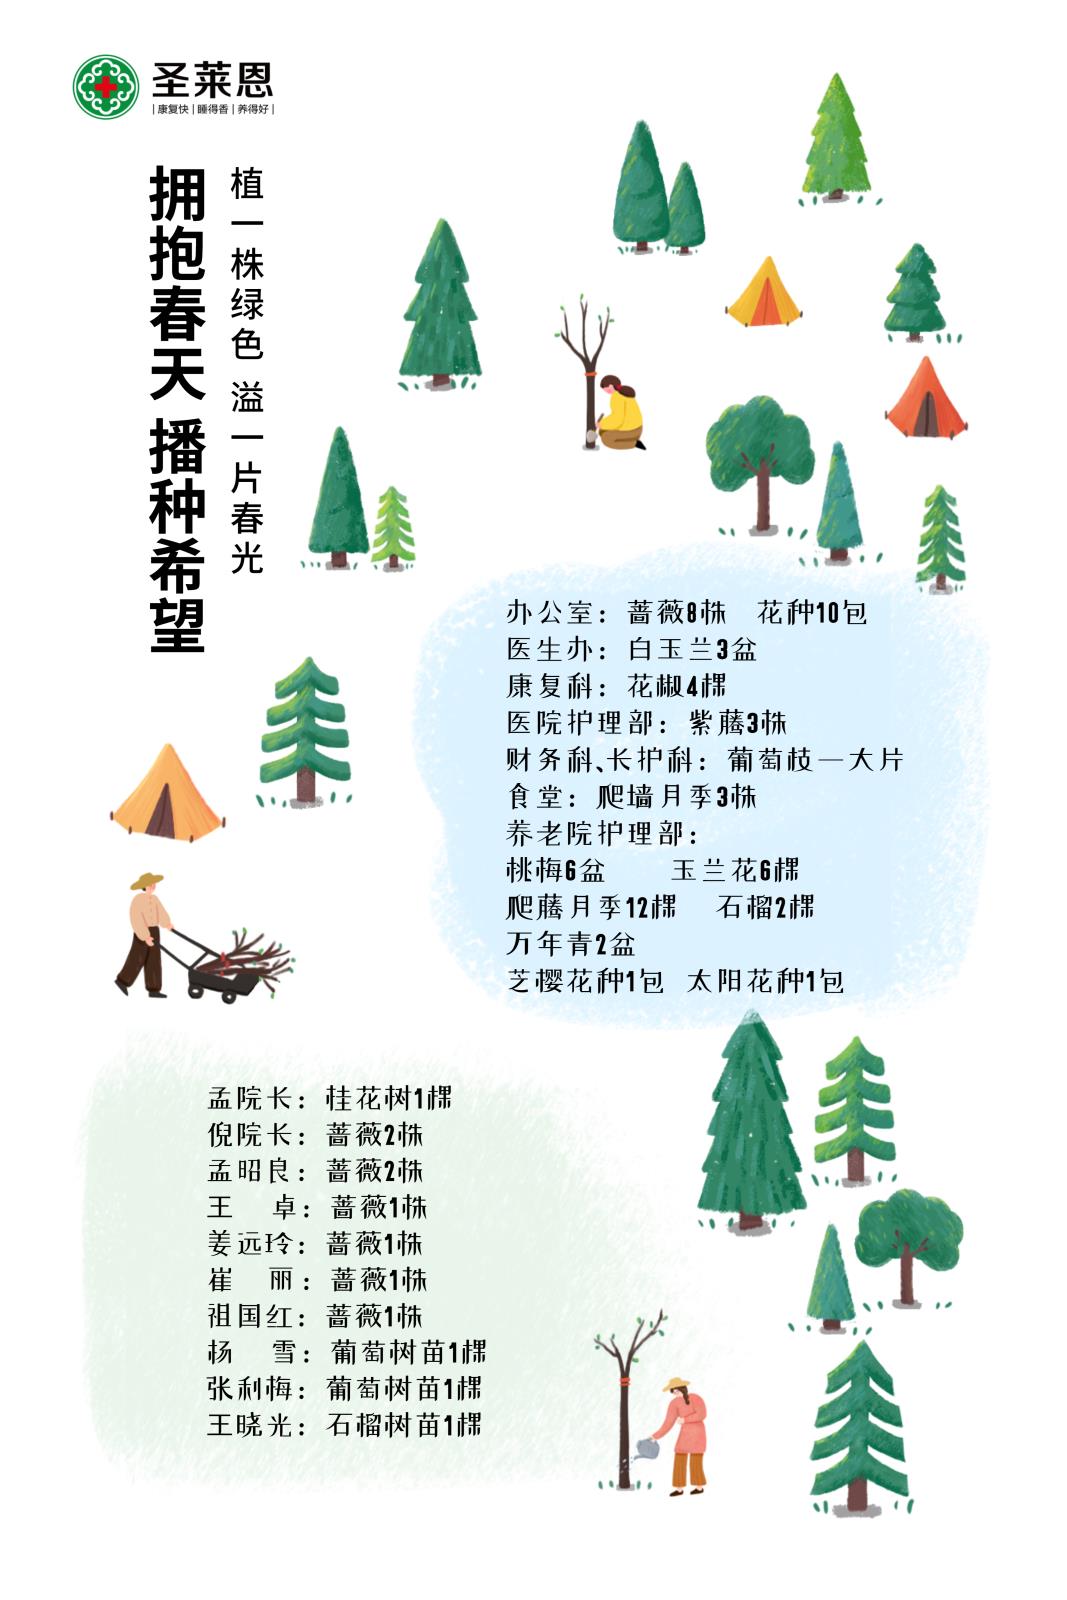 植树节活动宣传活动流程长图海报.jpg